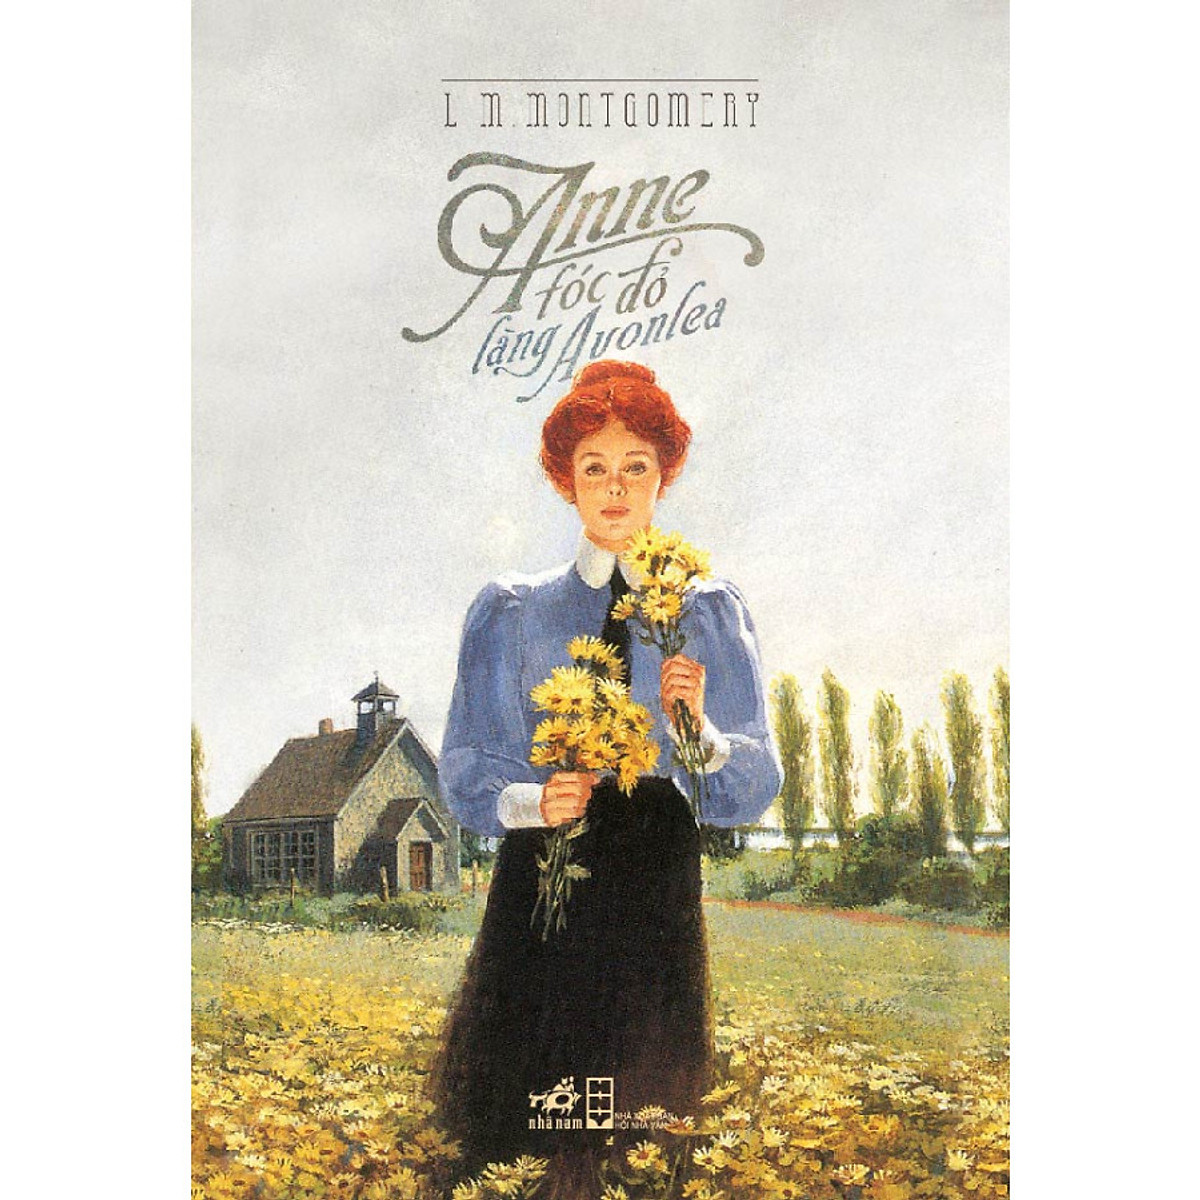 Combo 2 cuốn sách: Anna Karenina  tập 2 + Anne tóc đỏ làng Avonlea